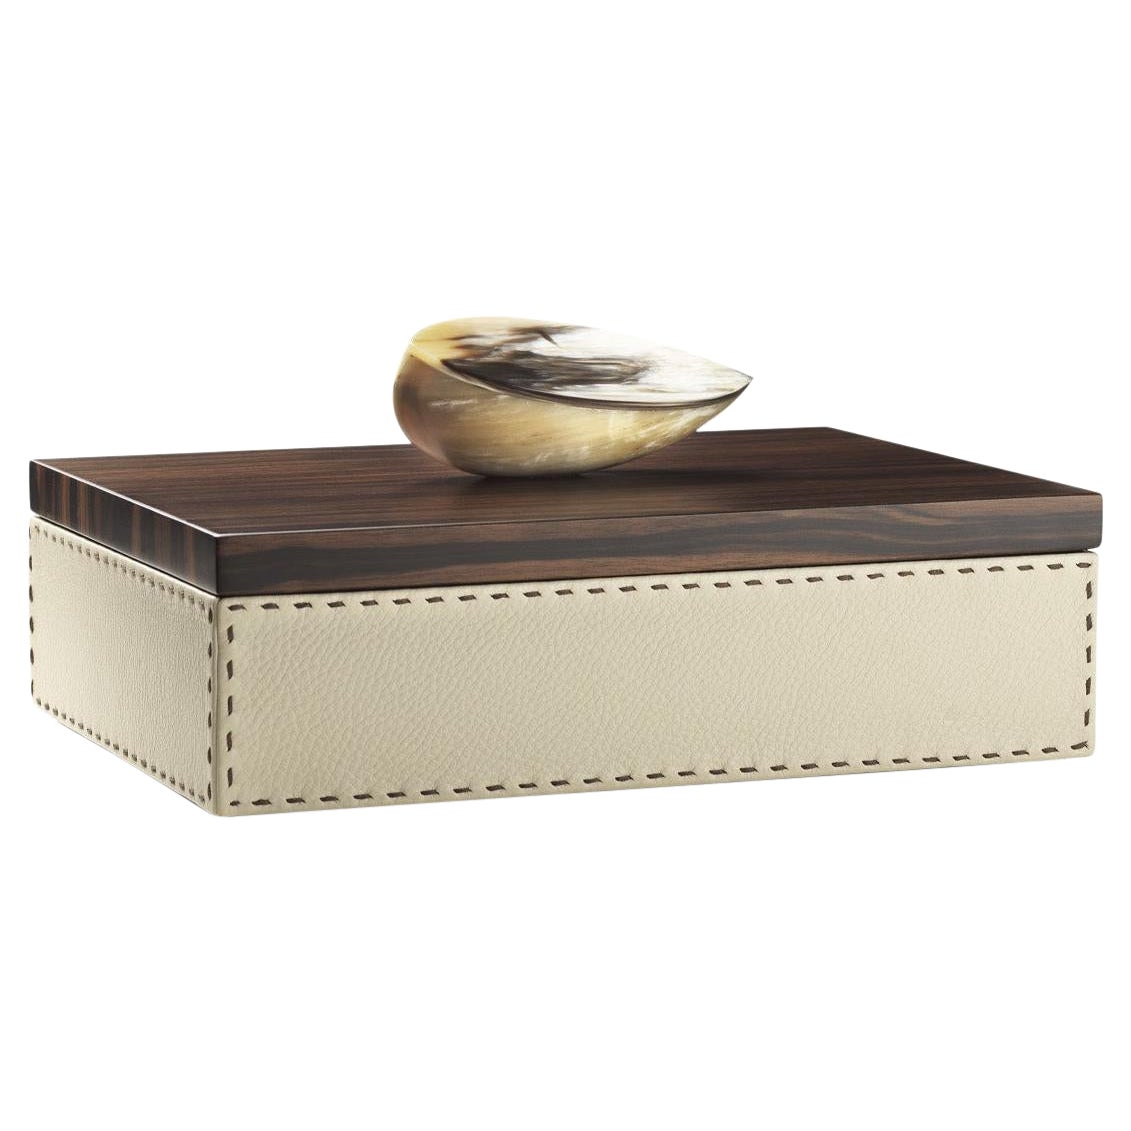 Capricia Box in Pebbled Leather with Handle in Corno Italiano, Mod. 4473